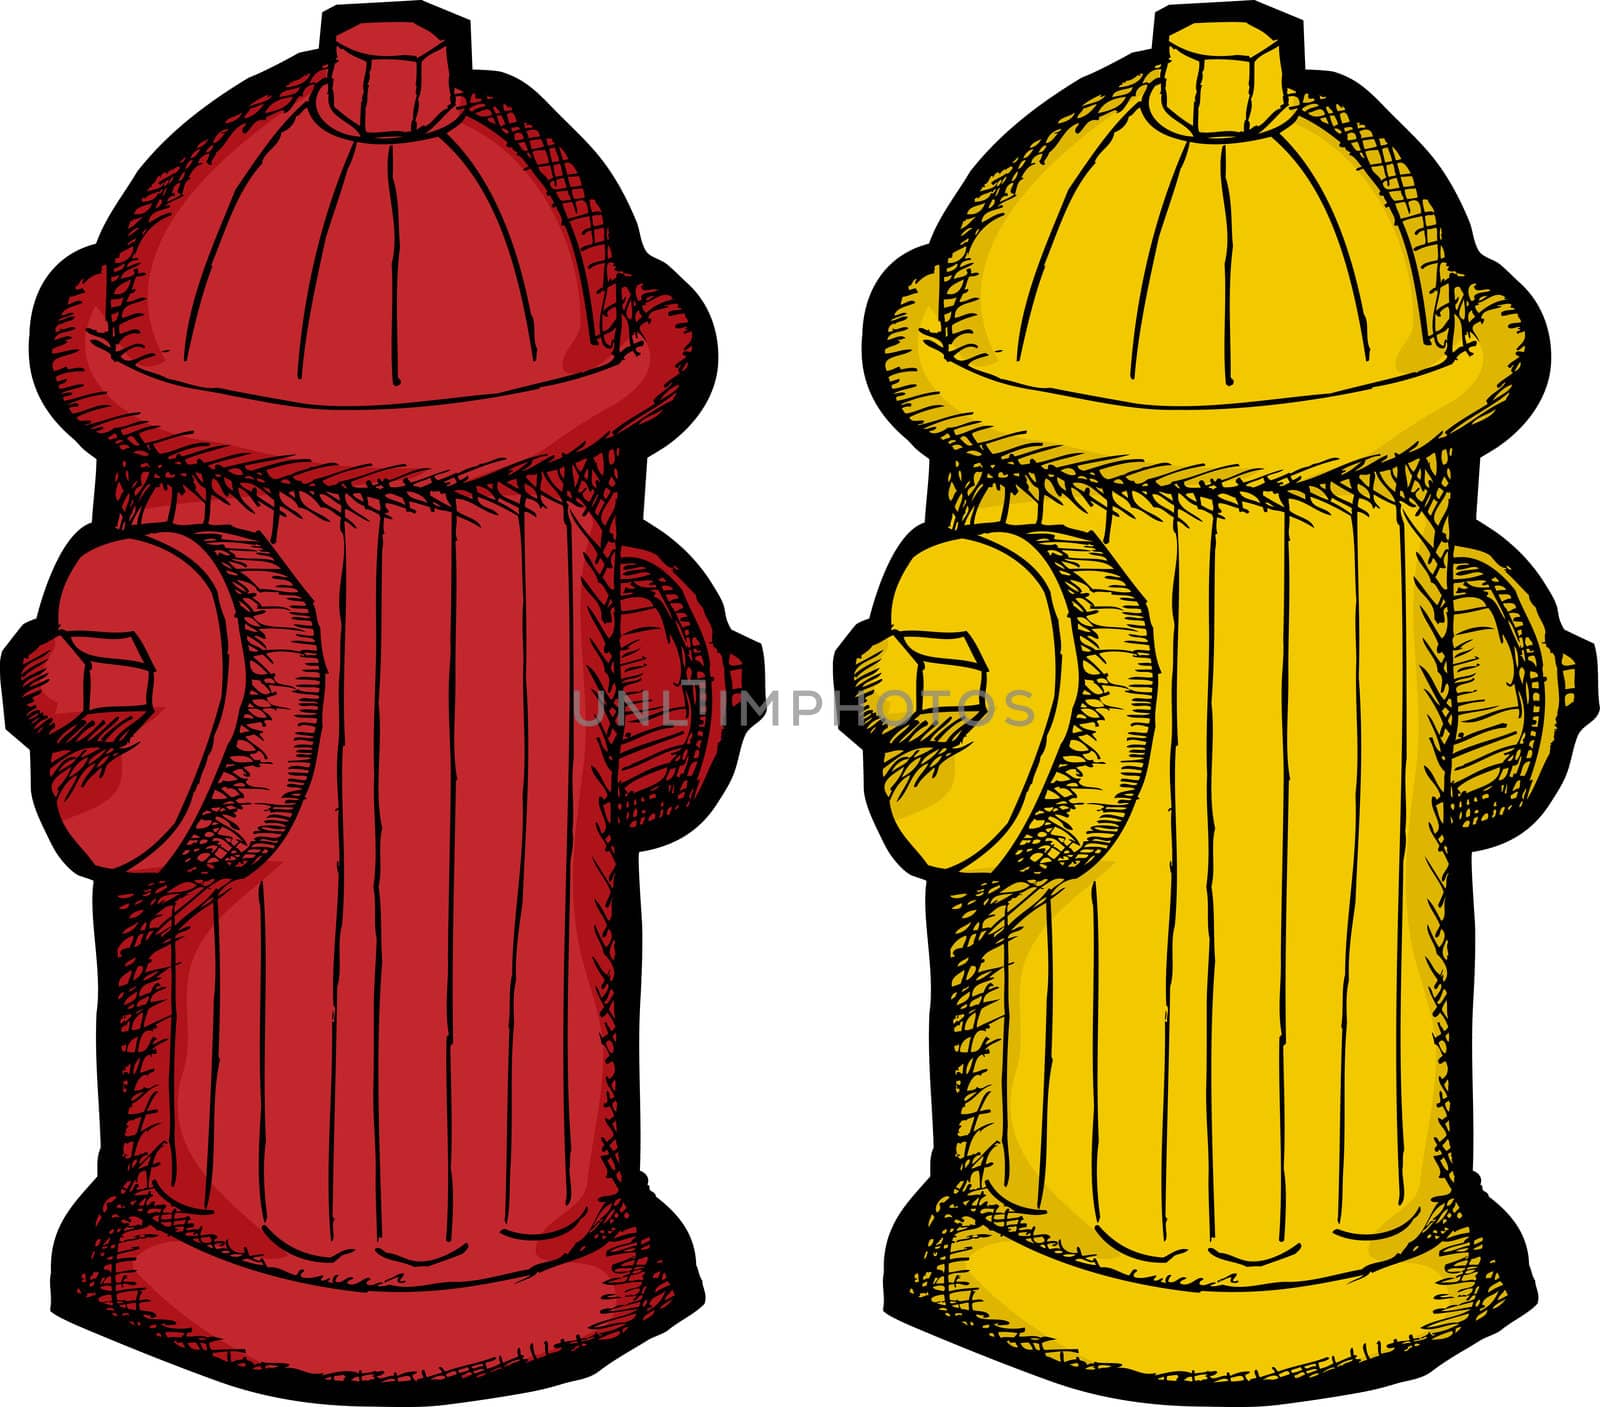 Fire Hydrant Cartoon by TheBlackRhino